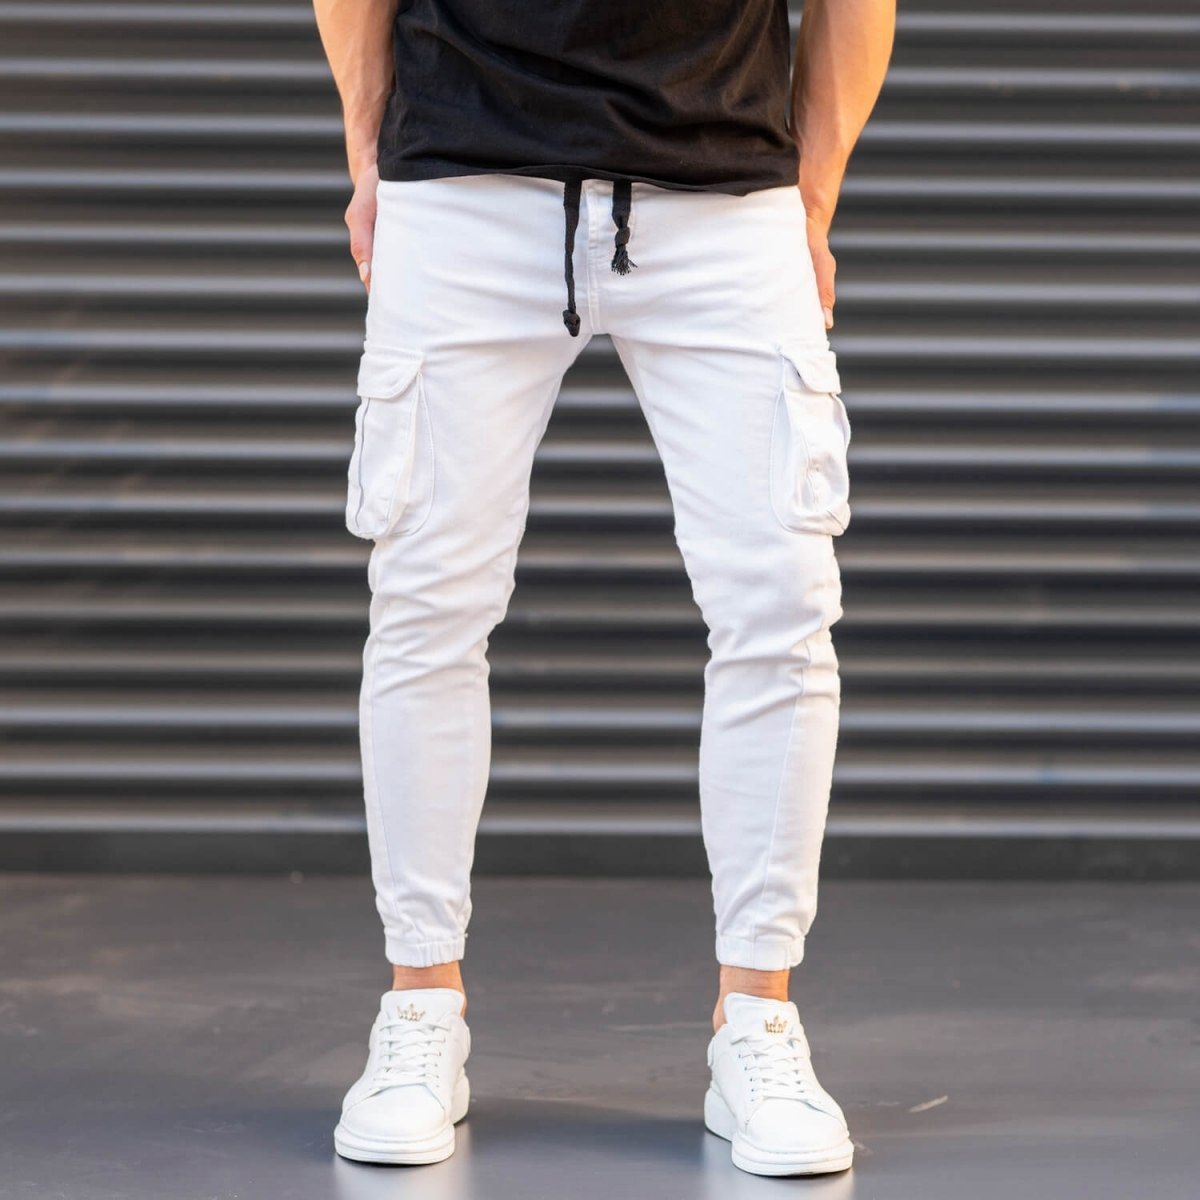 Herren Jeans mit Seitentaschen in weiß - 1